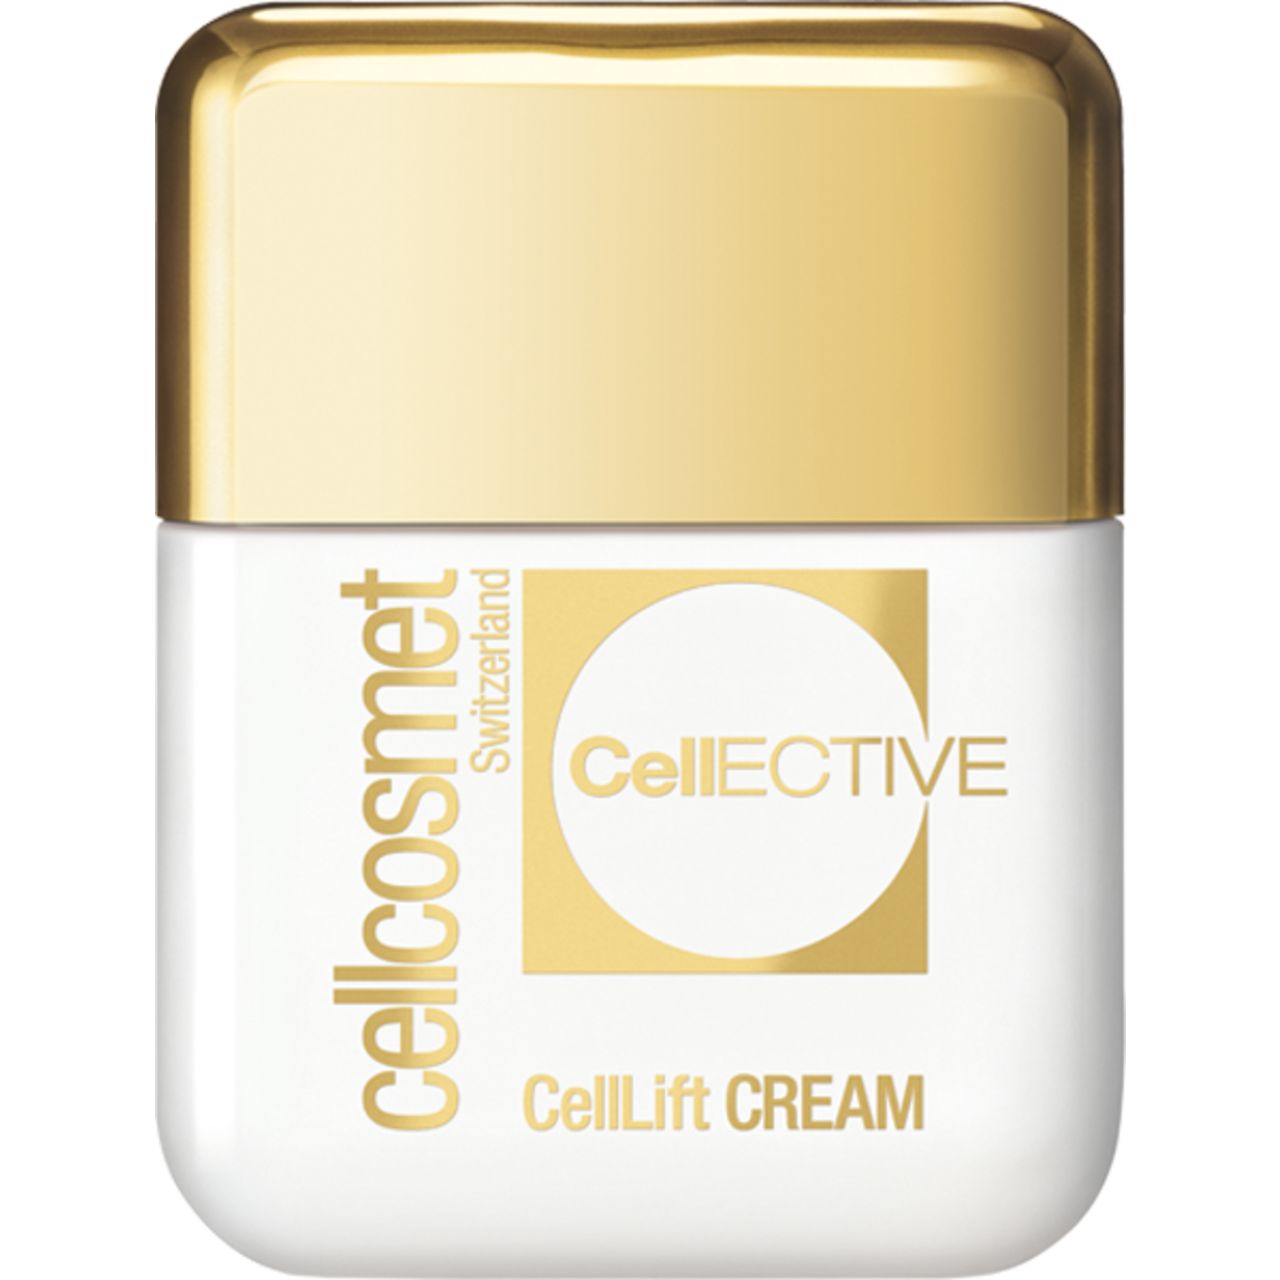 Cellcosmet CellEctive CellLift Cream